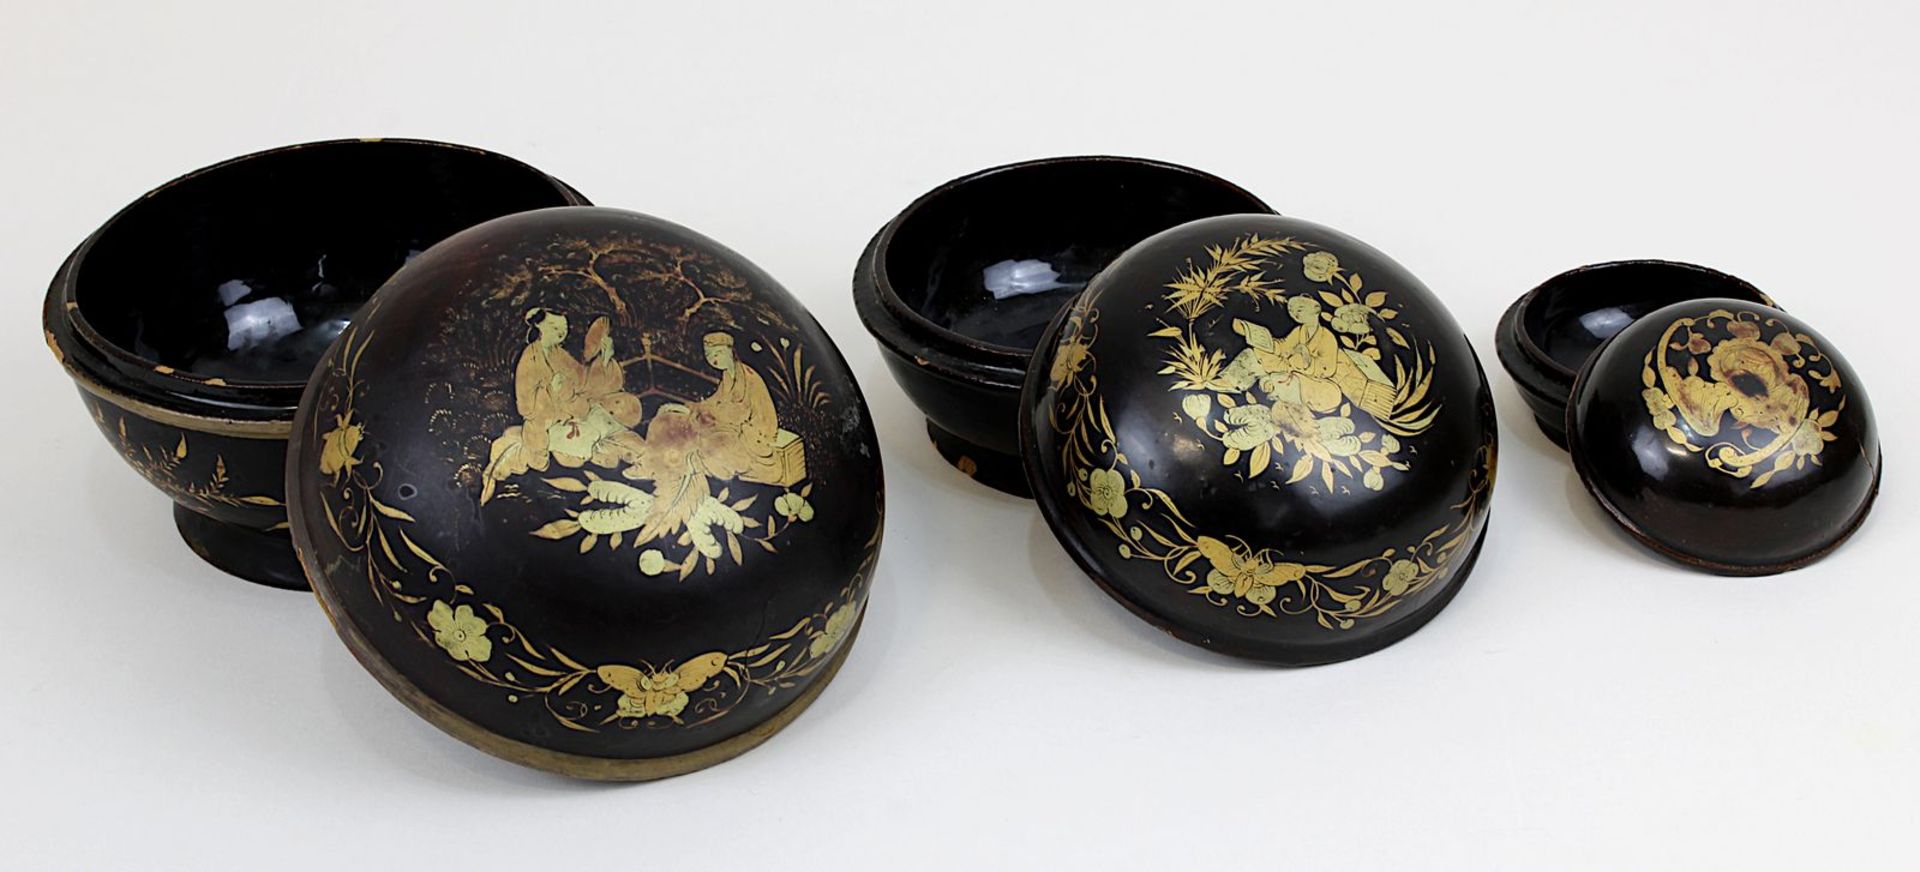 3 ineinanderpassende Lackdosen, China um 1900, fein bemalt in 2 Goldtönen auf schwarzem Grund mit